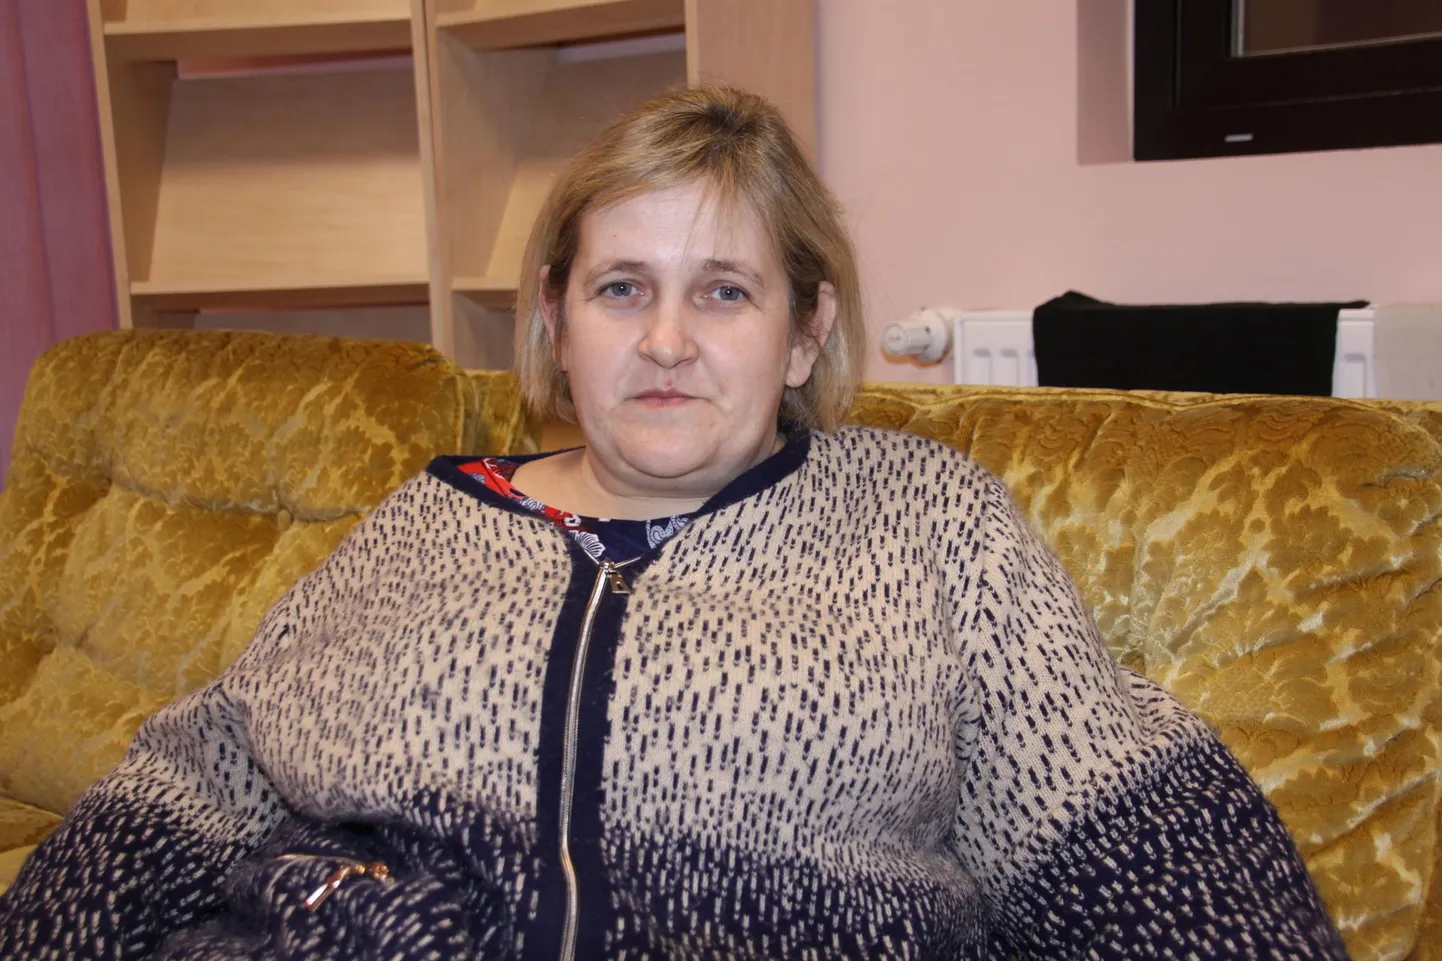 Psühholoog Natalja Timpšenko ütleb Donetski kogemusele viidates, et sõjapõgenikud peaksid võimalikult kiiresti asuma omaette elama, sest sugulaste juurde kauaks jäädes tekivad pinged ja leppimatud tülid.